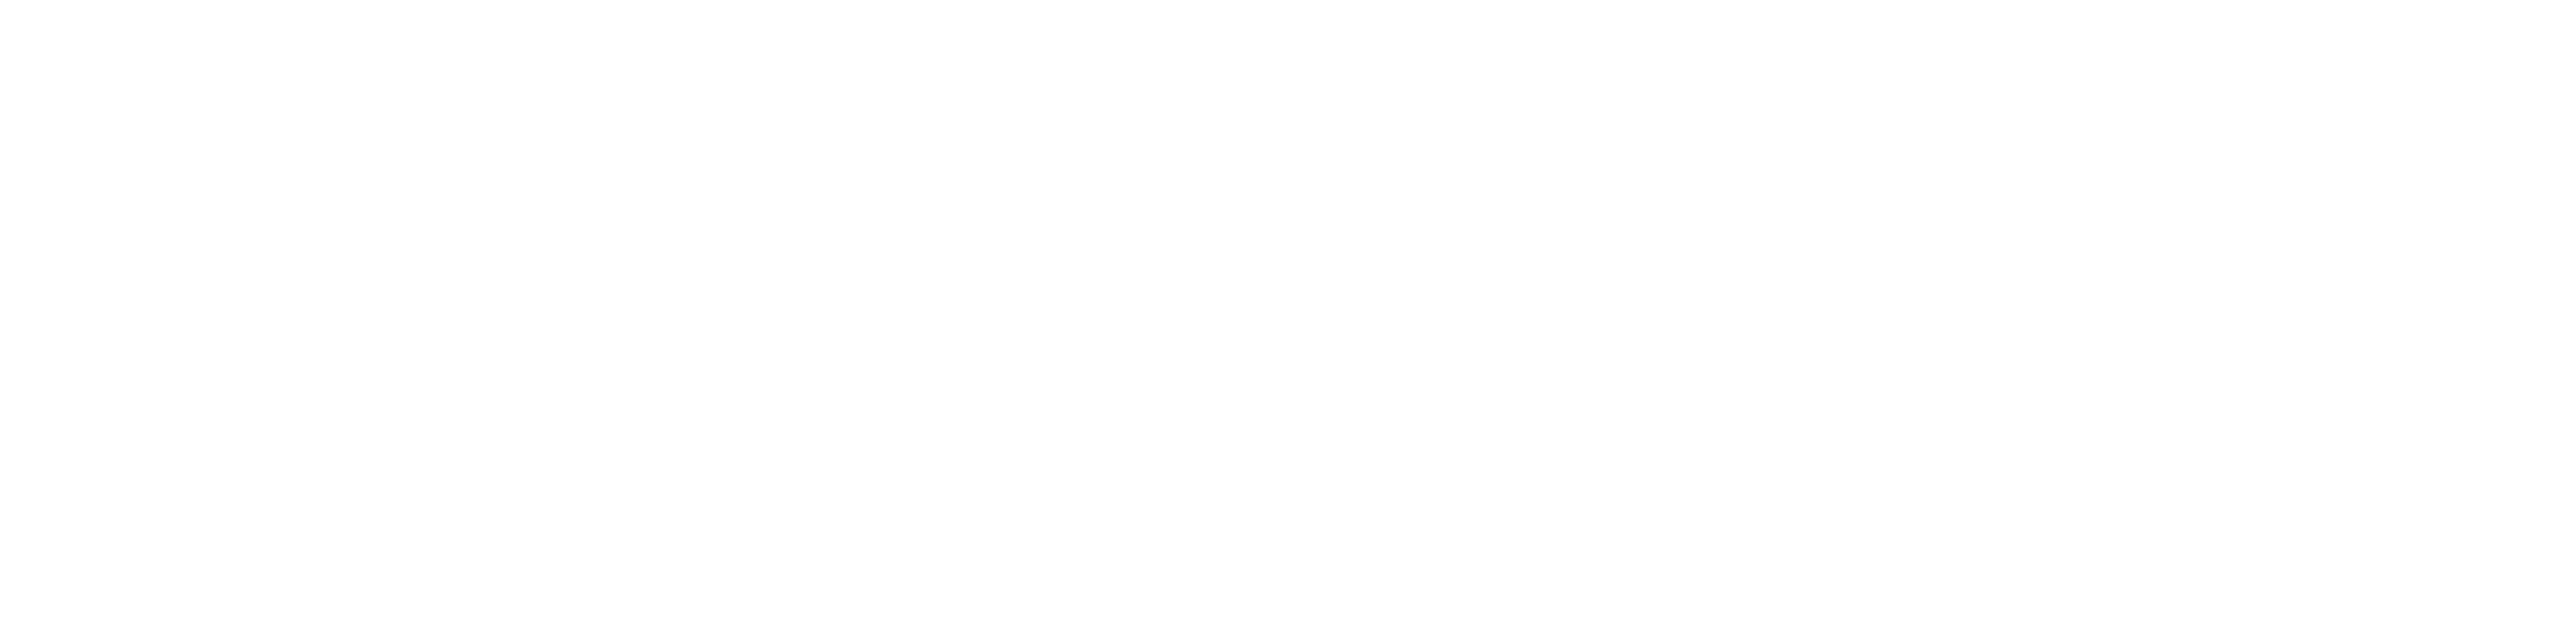 PLAN-B NET ZERO - Sales